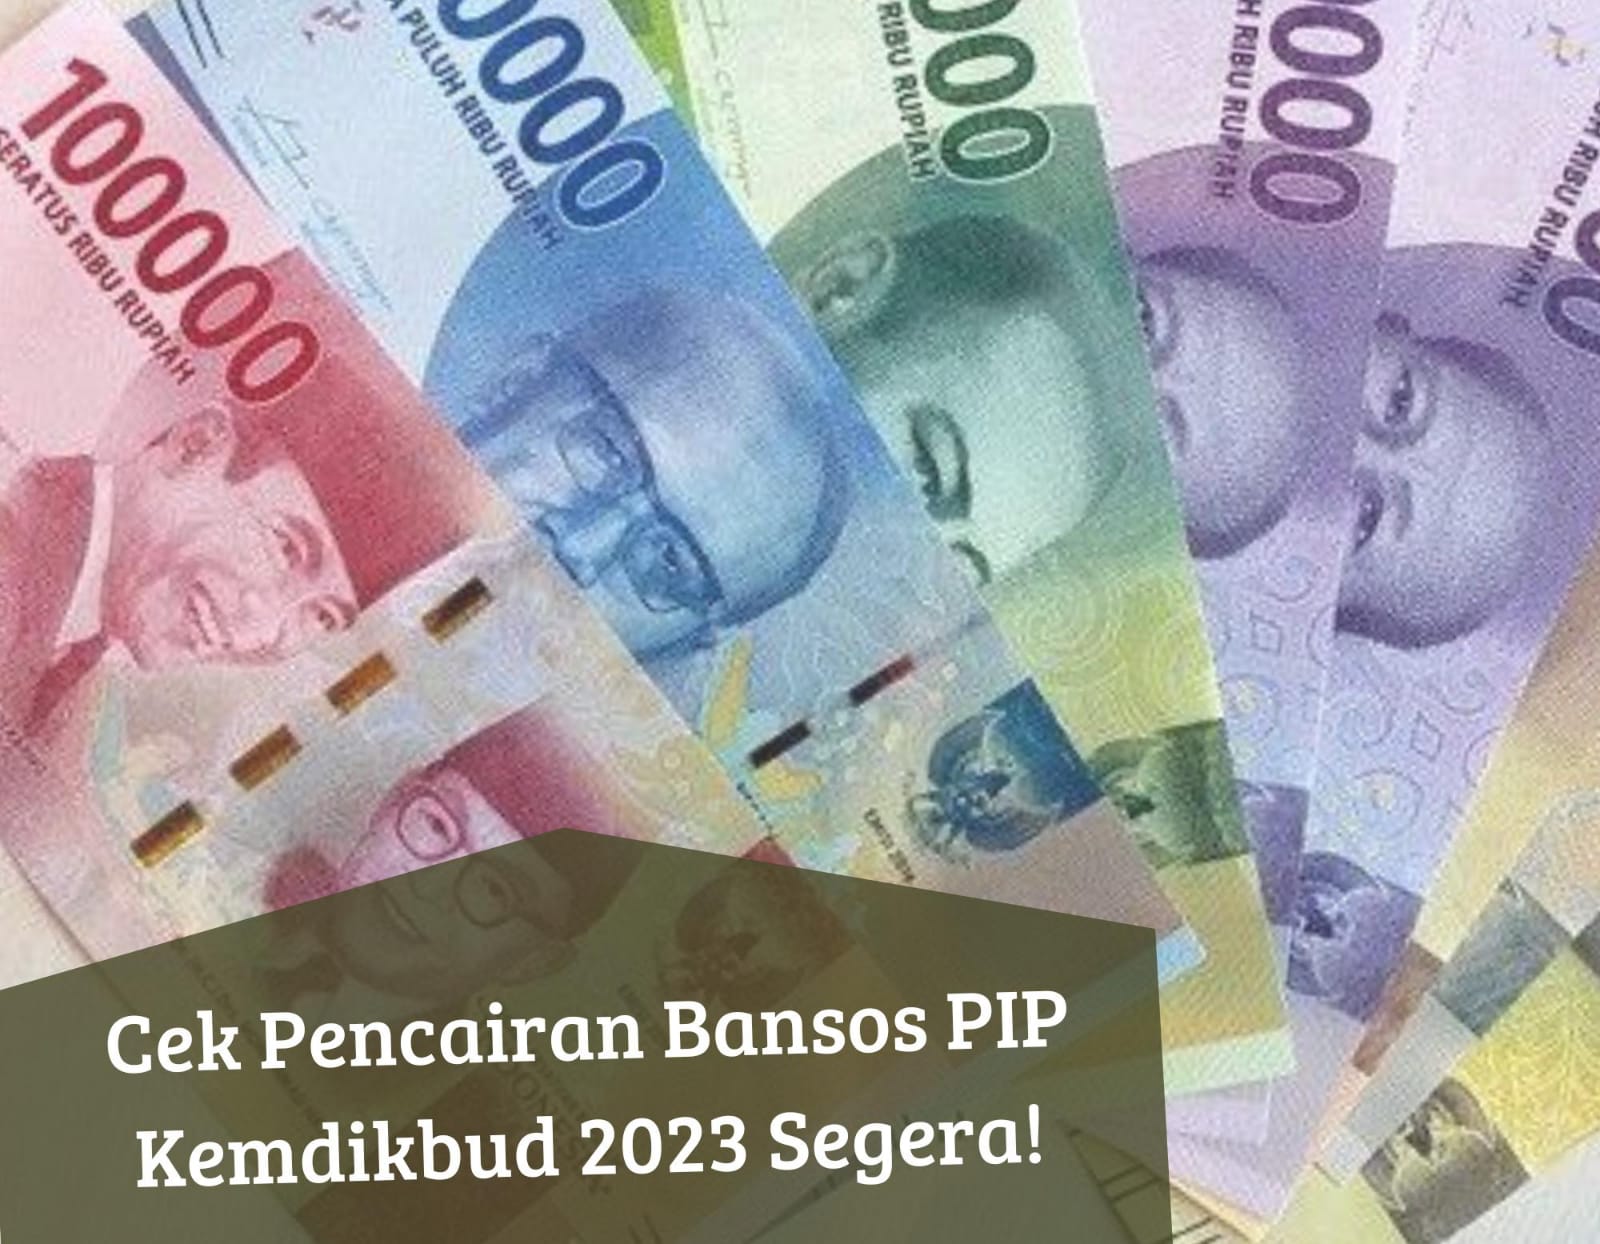 Siap-siap Cair November, Simak Cara Cek Bansos PIP Kemdikbud 2023 Lewat Online, Auto Dapat Uang Rp1 Juta